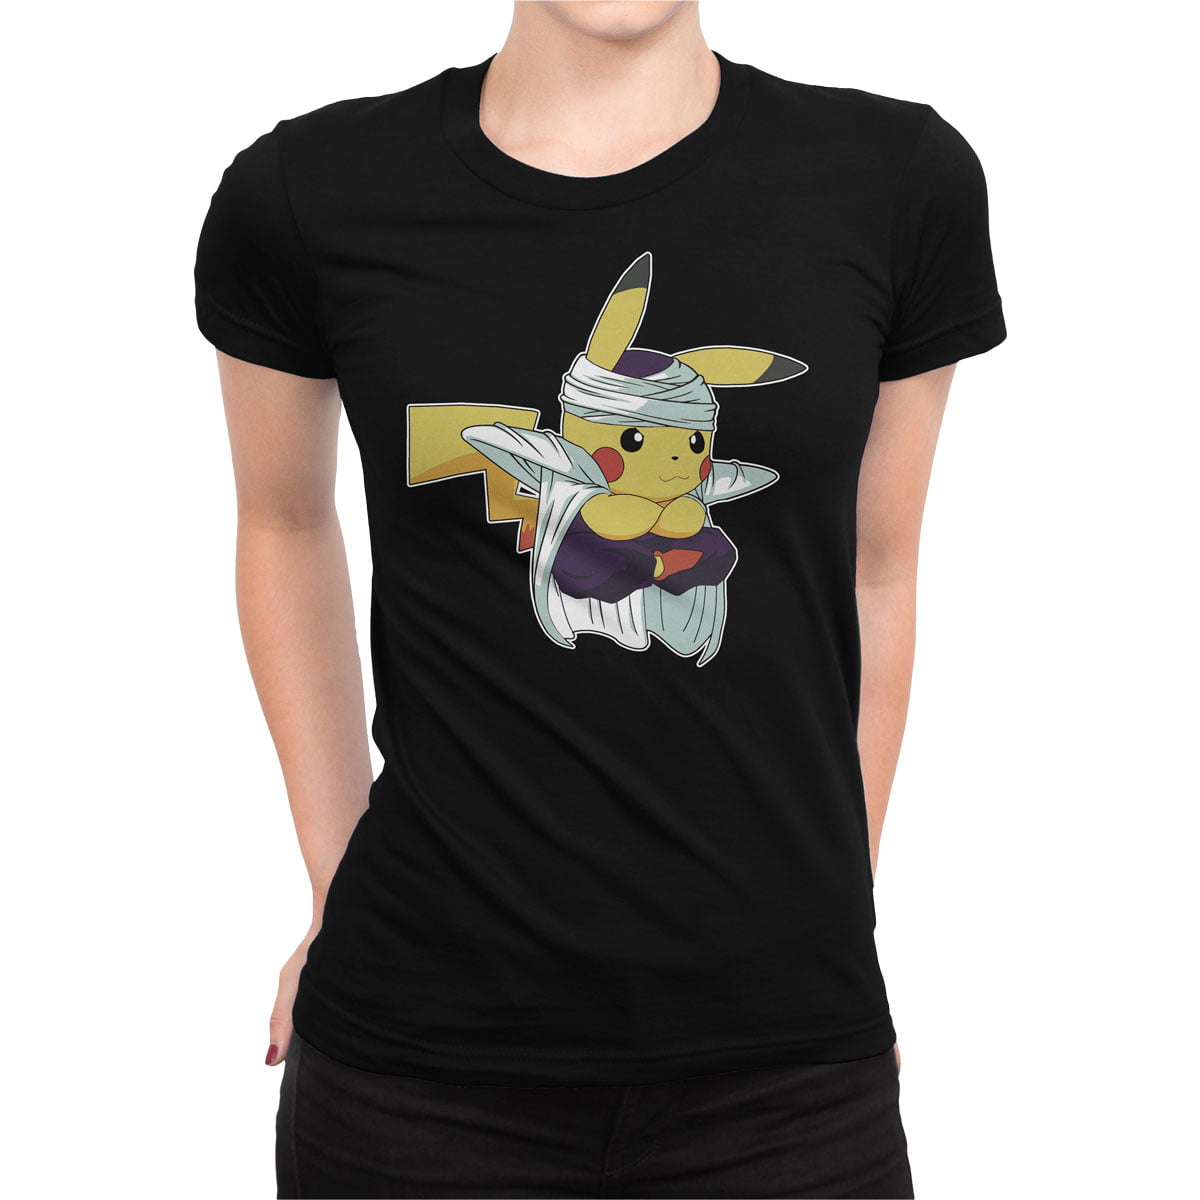 Dragonball 4 shirt s kadin - dragon ball piccolo ile pikachu kadın t-shirt - figurex